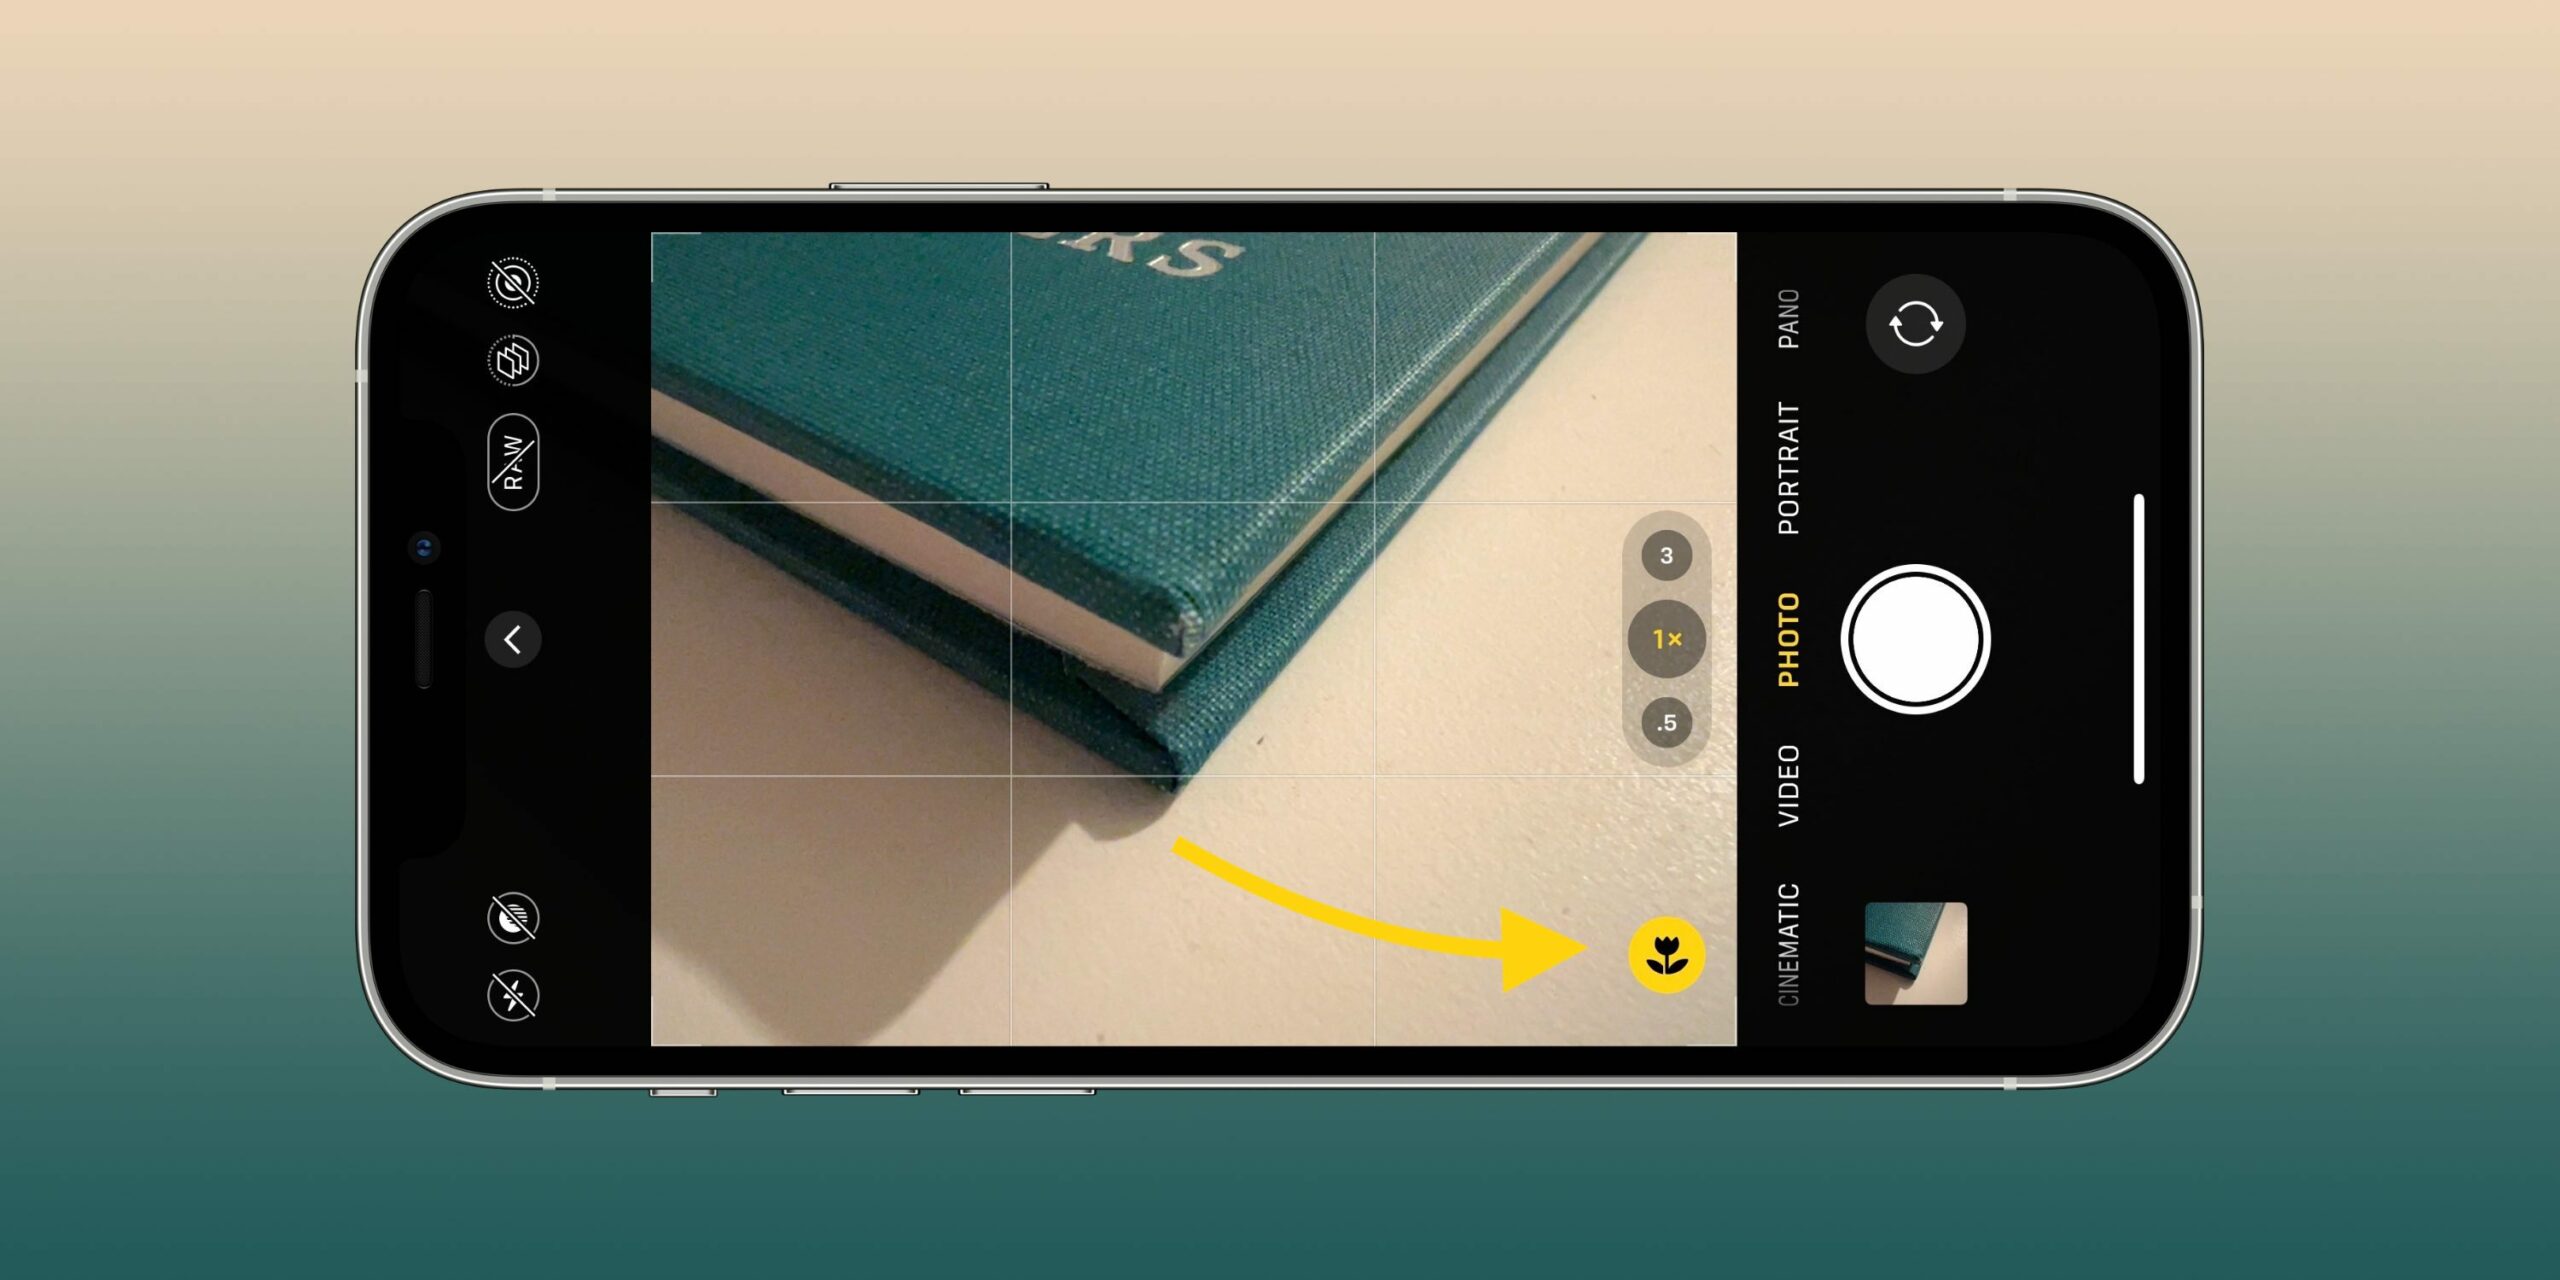 Một số thiết lập camera sẽ giúp bạn chụp ảnh và quay video đẹp hơn trên iPhone